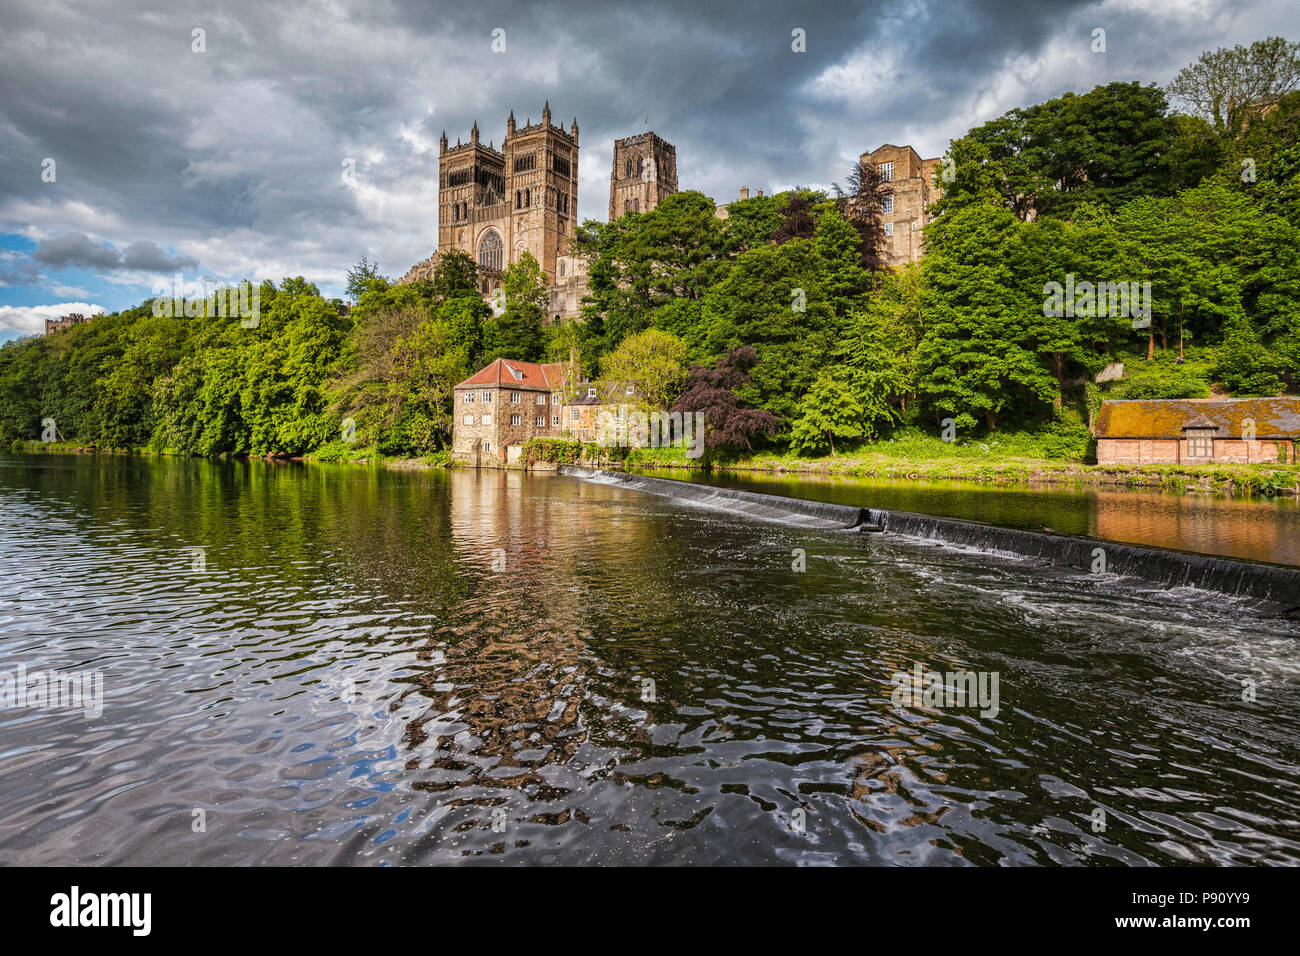 La catedral de Durham y el río desgaste bajo un cielo tormentoso. Foto de stock